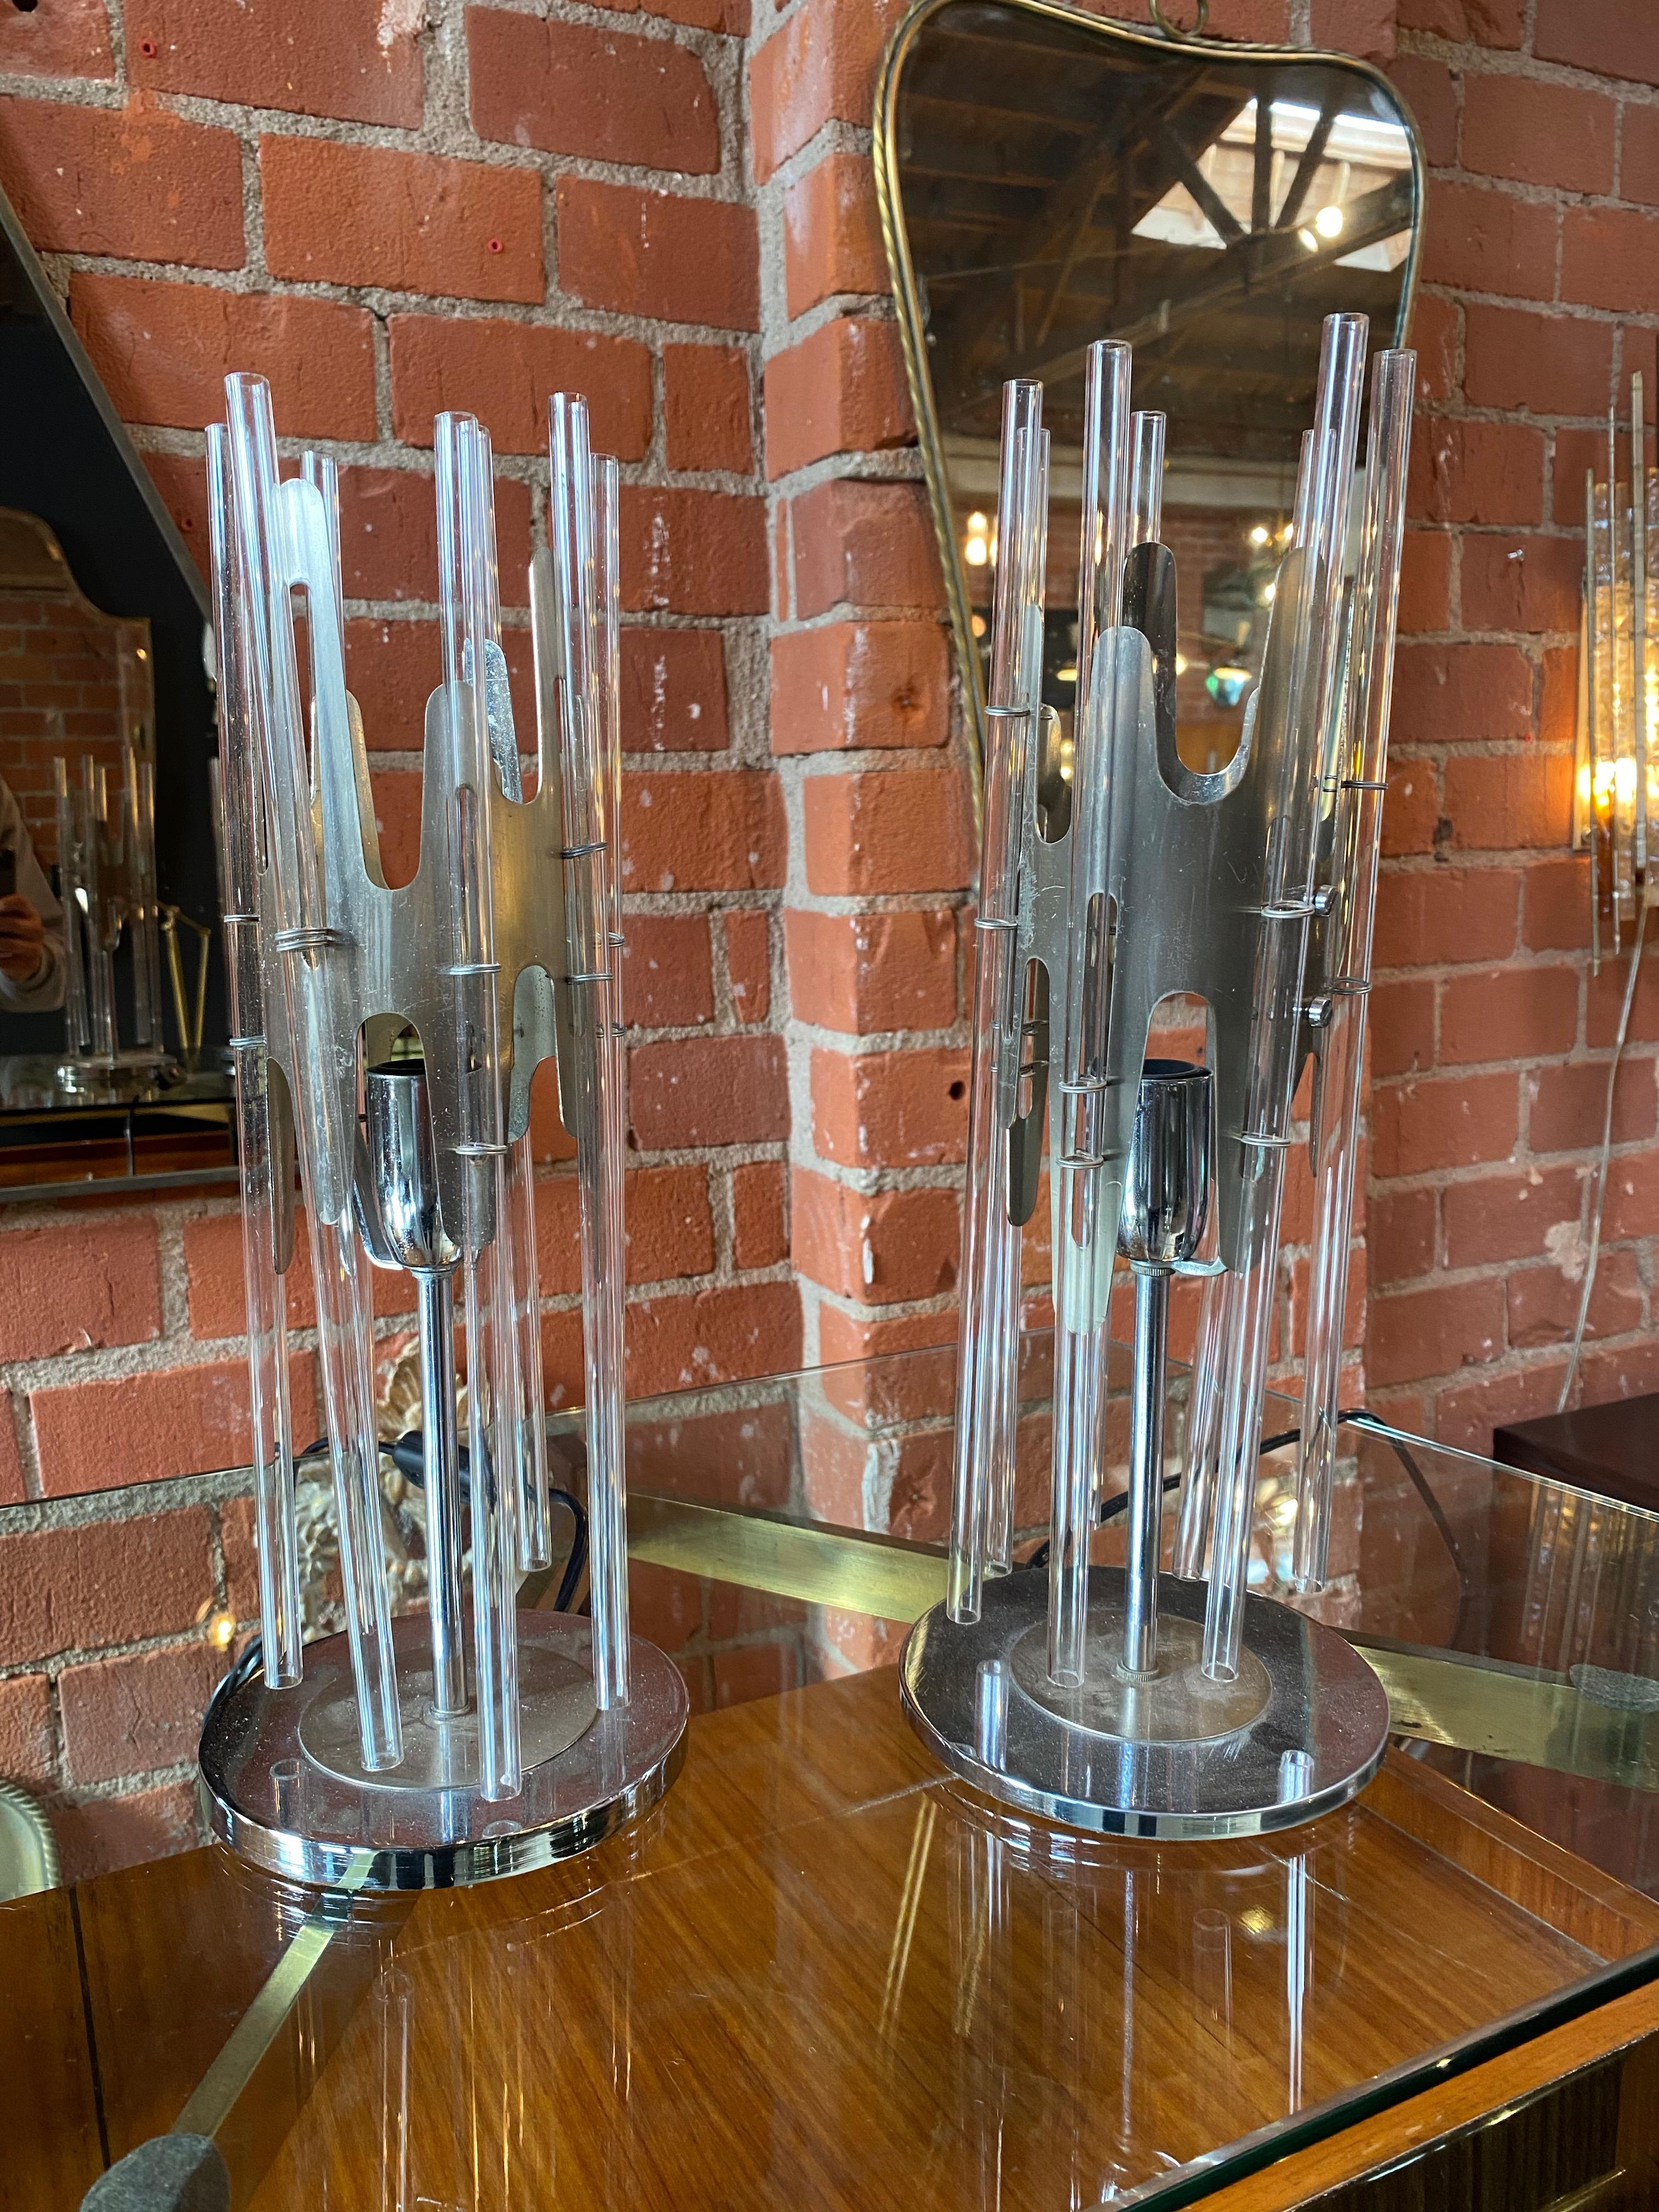 Sciolari paire de lampes de table modernes cylindriques en verre et chrome, Italie, 1970
La finition chromée du cadre artisanal en forme de clôture complète magnifiquement la surface de l'abat-jour en 7 verres tubulaires transparents de ces